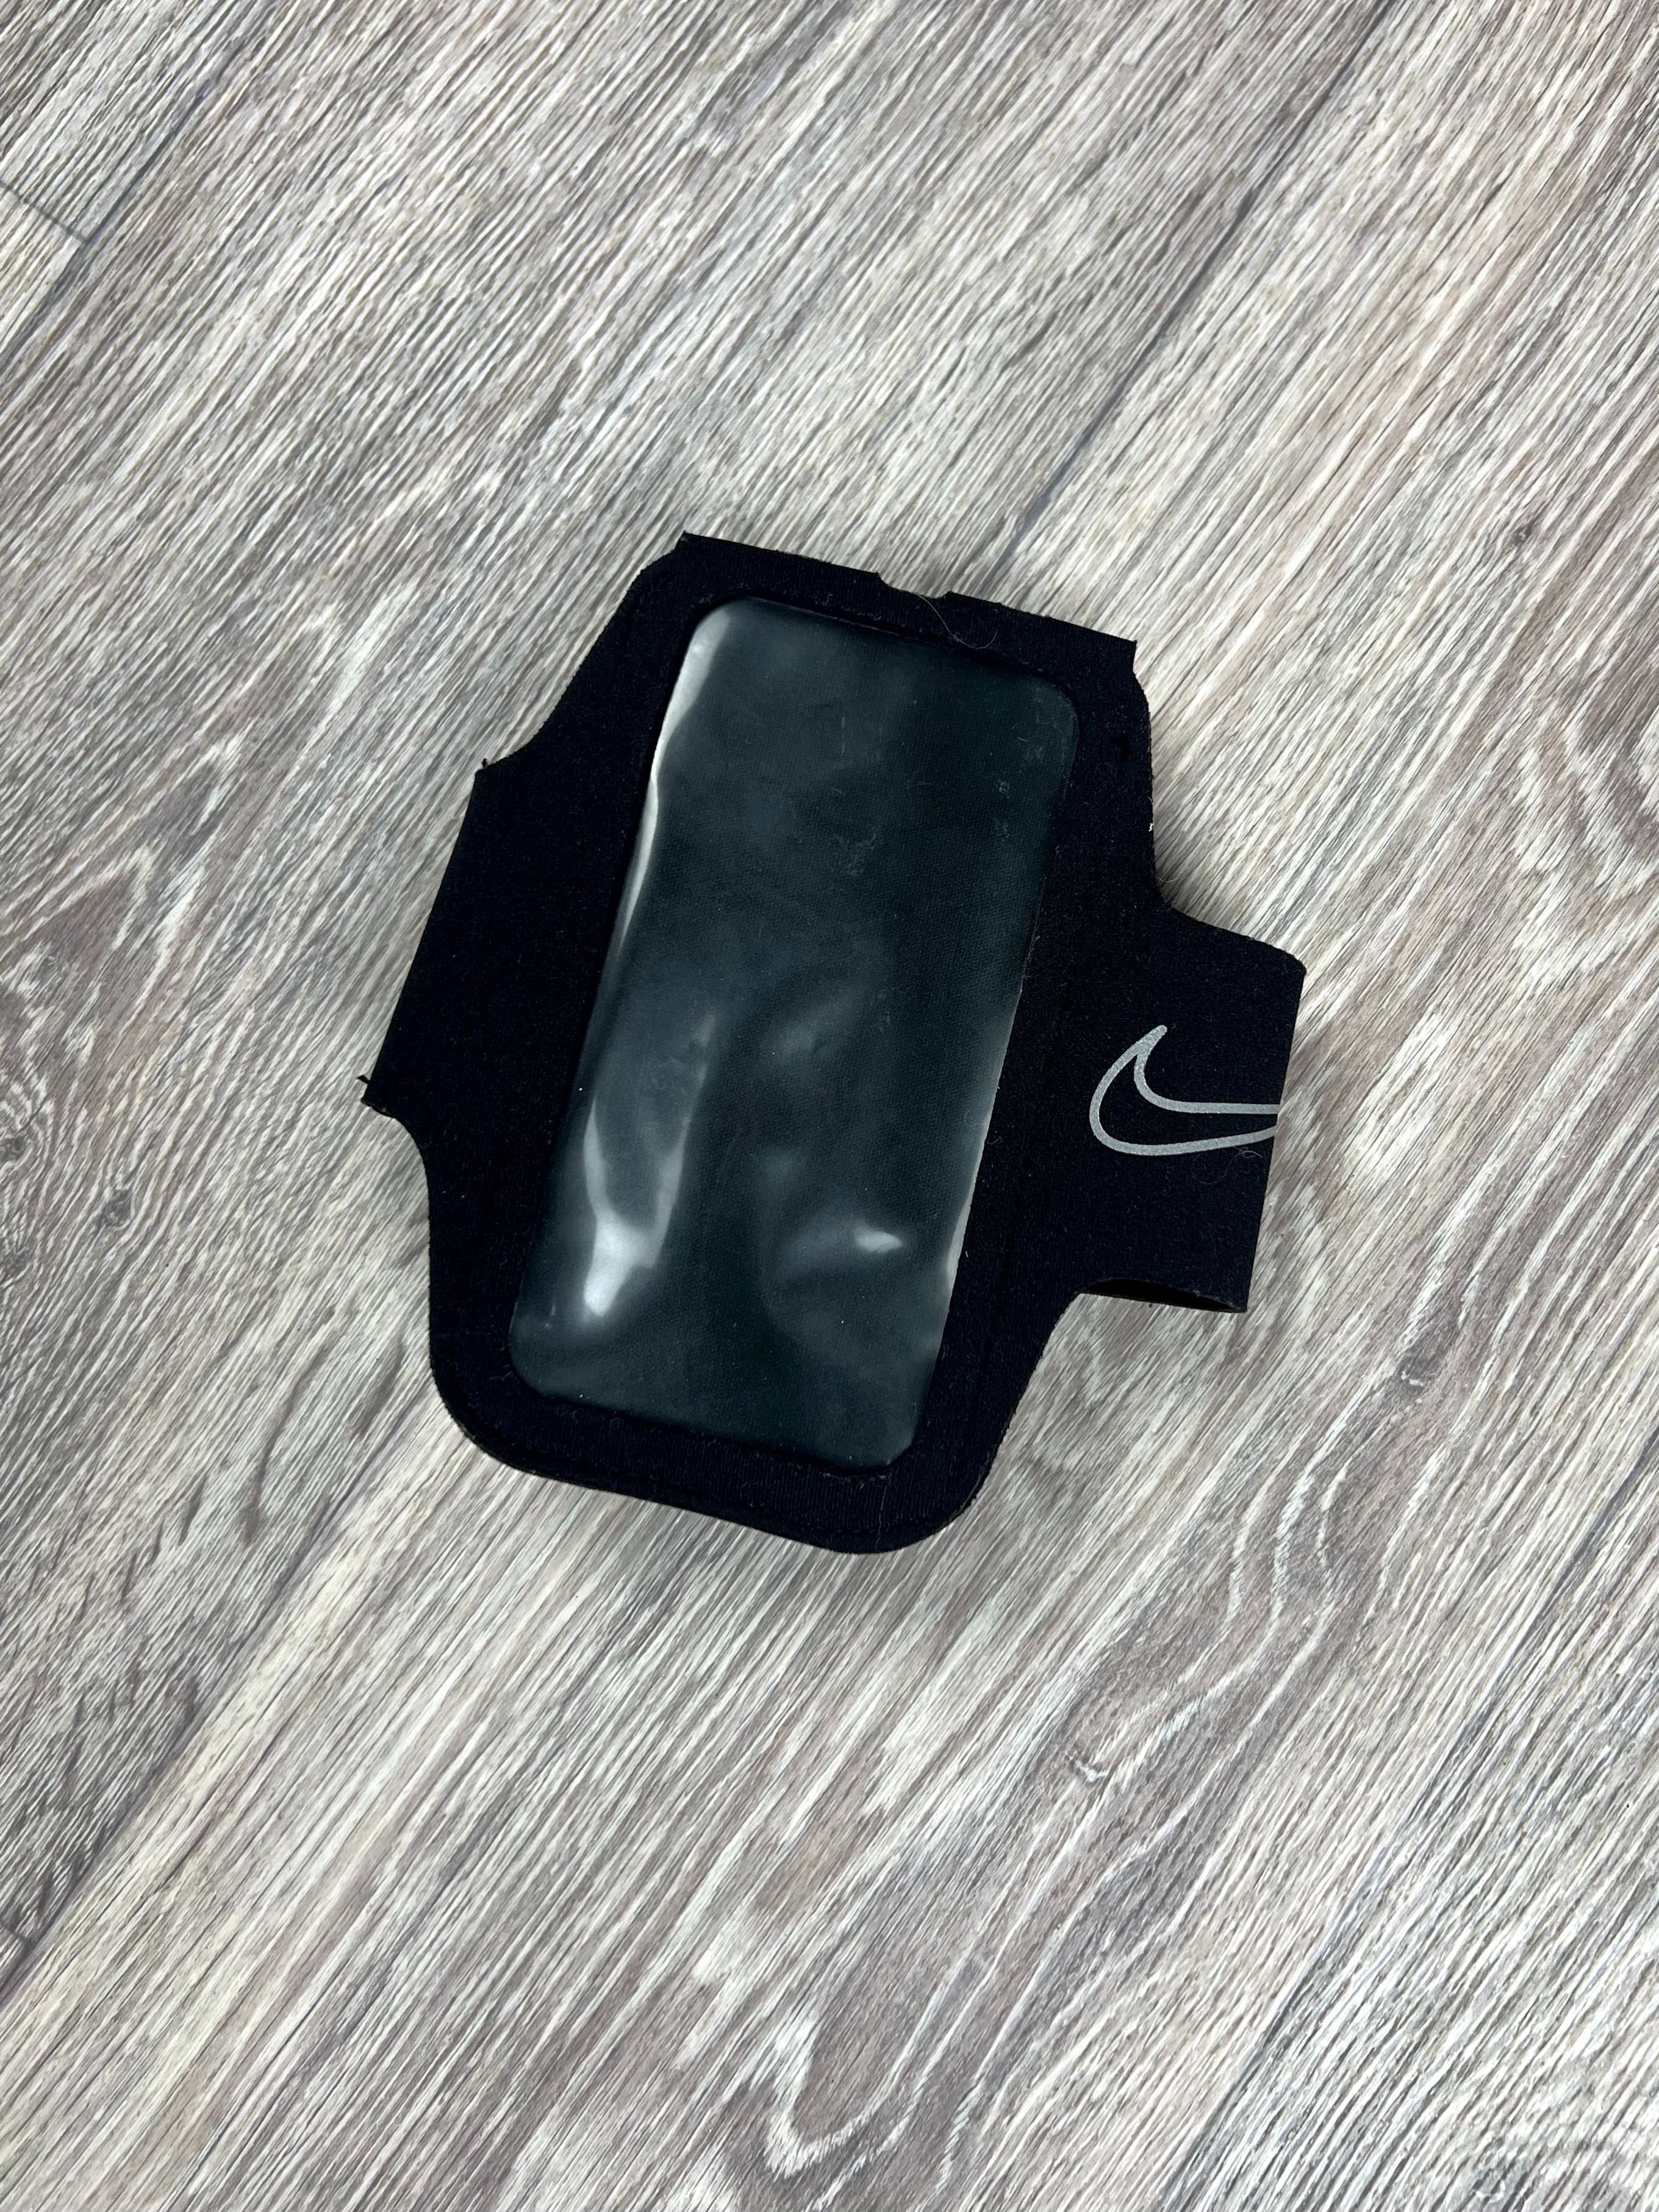 Nike чехол для телефона на руку / плечо чёрный оригинал